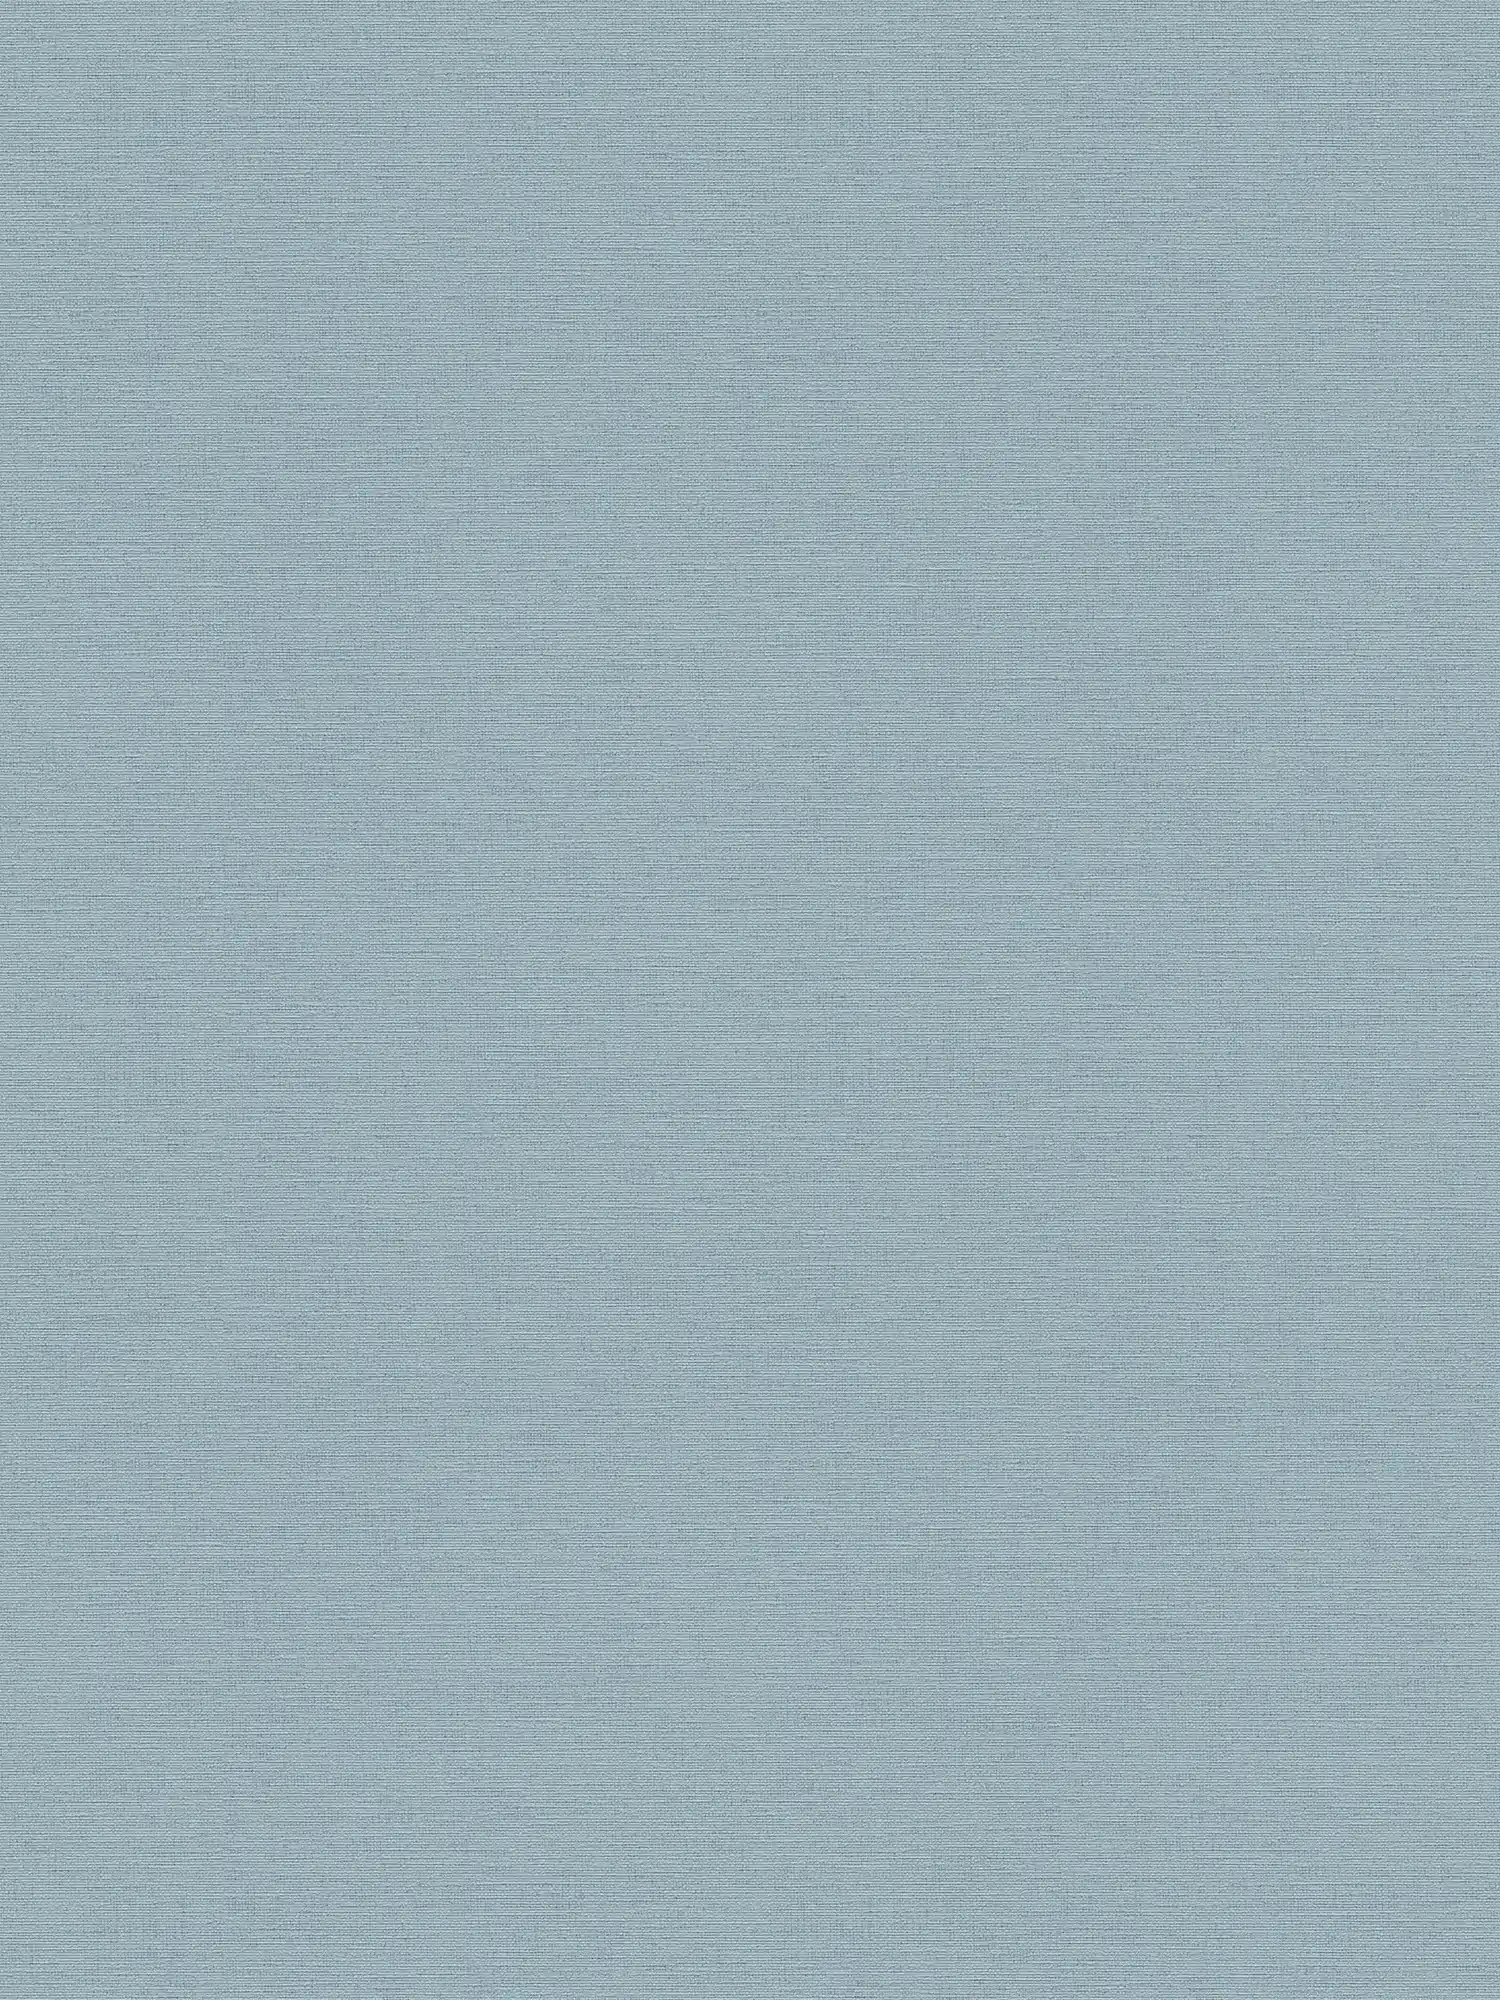 Carta da parati in lino azzurro con aspetto tessile in stile scandi
